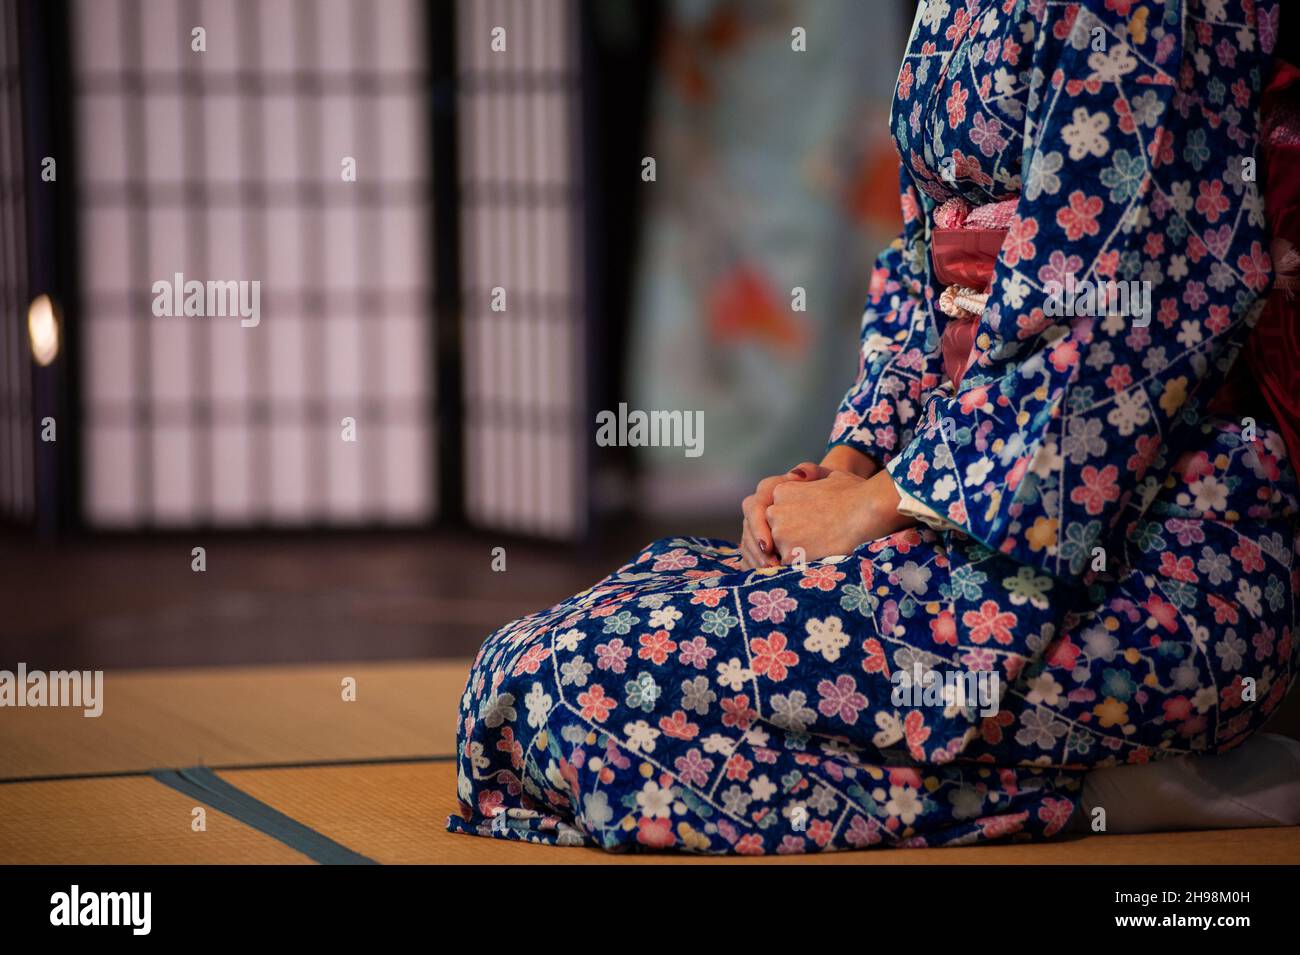 Frau im traditionellen Kimono, knieende Position. Seiza ist die formelle Art, sich nach alten japanischen Standards hinzusetzen. Speicherplatz kopieren. Stockfoto